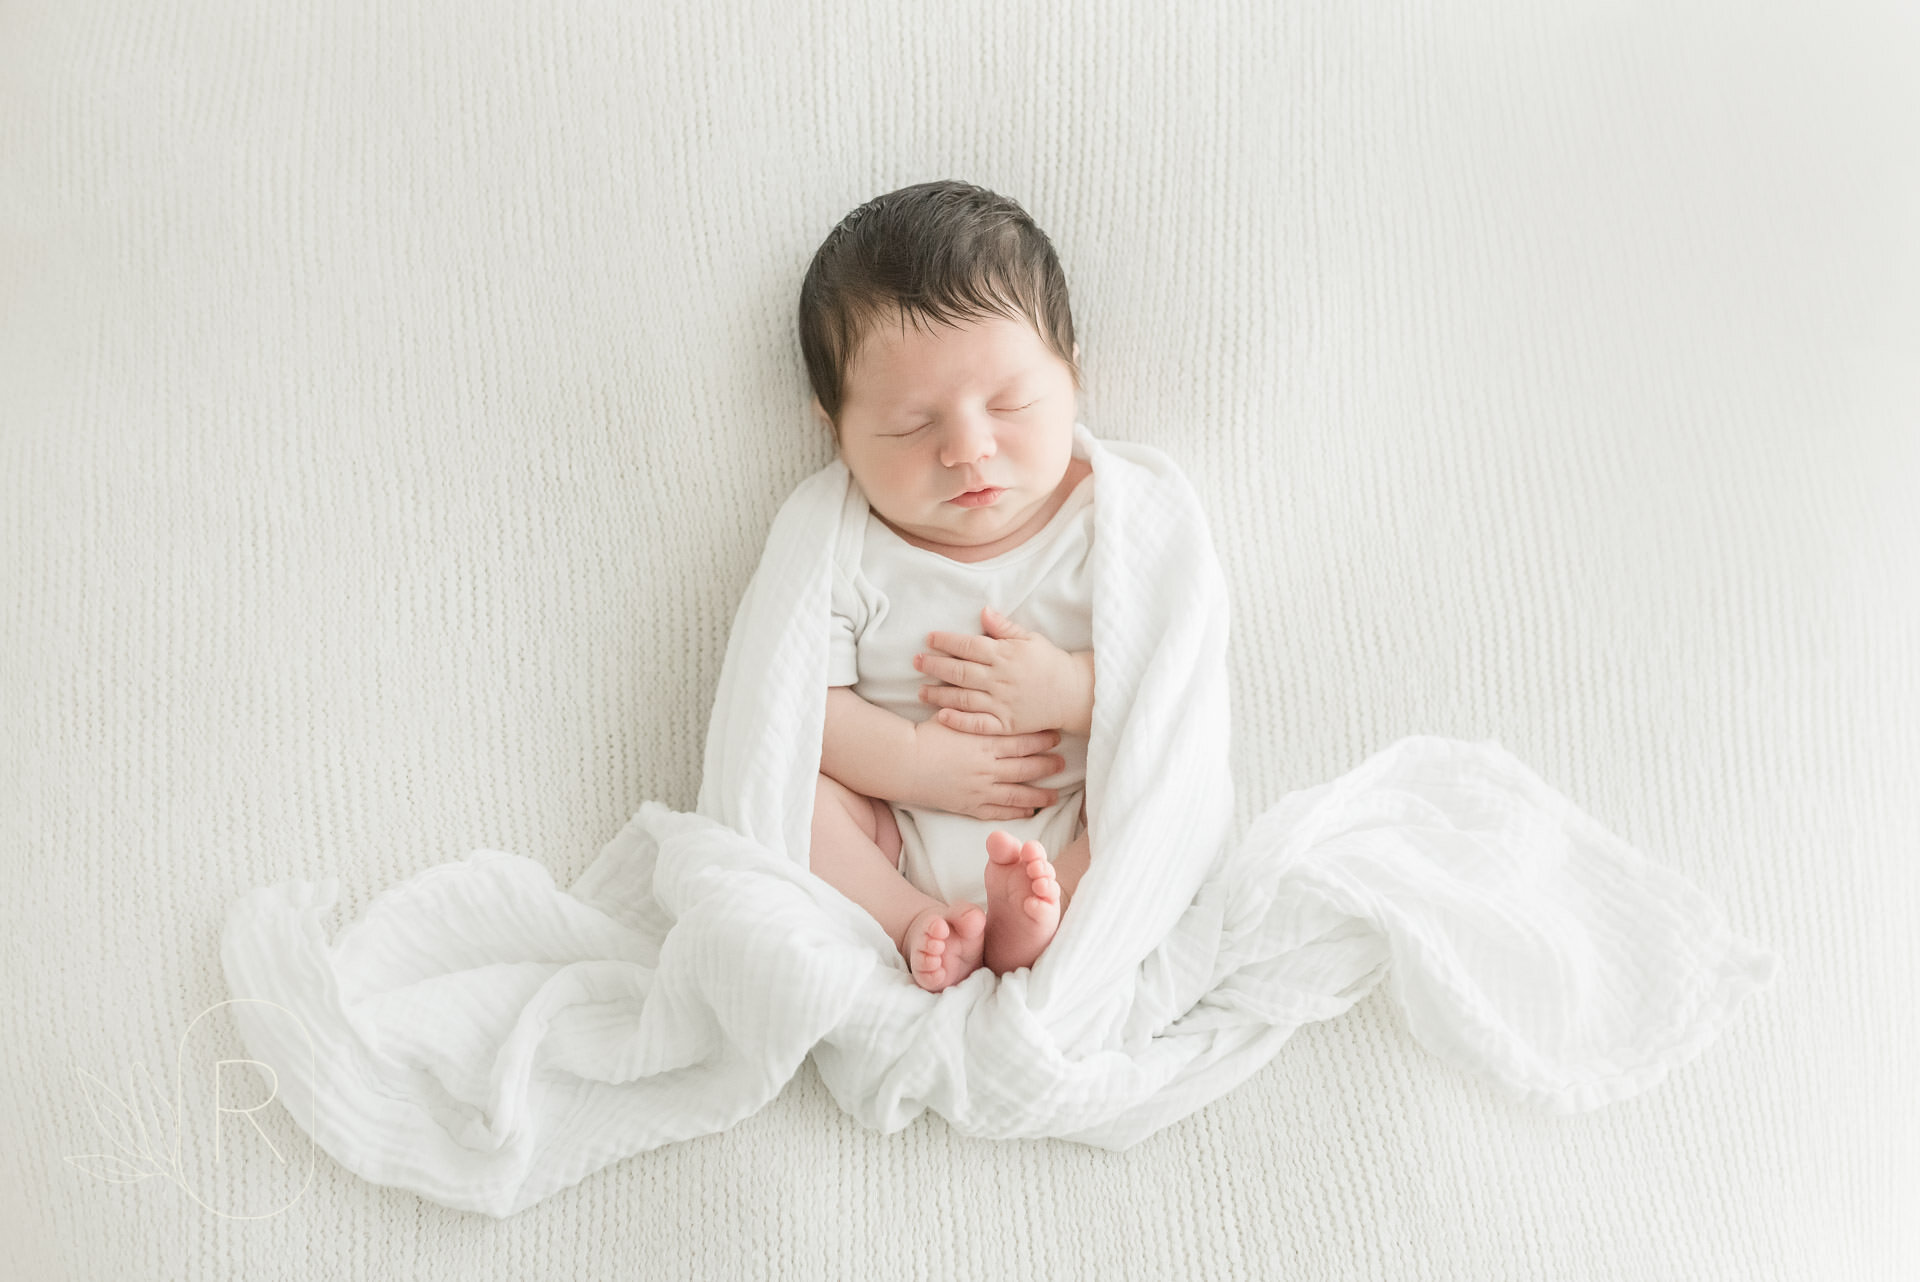 newborn baby poses